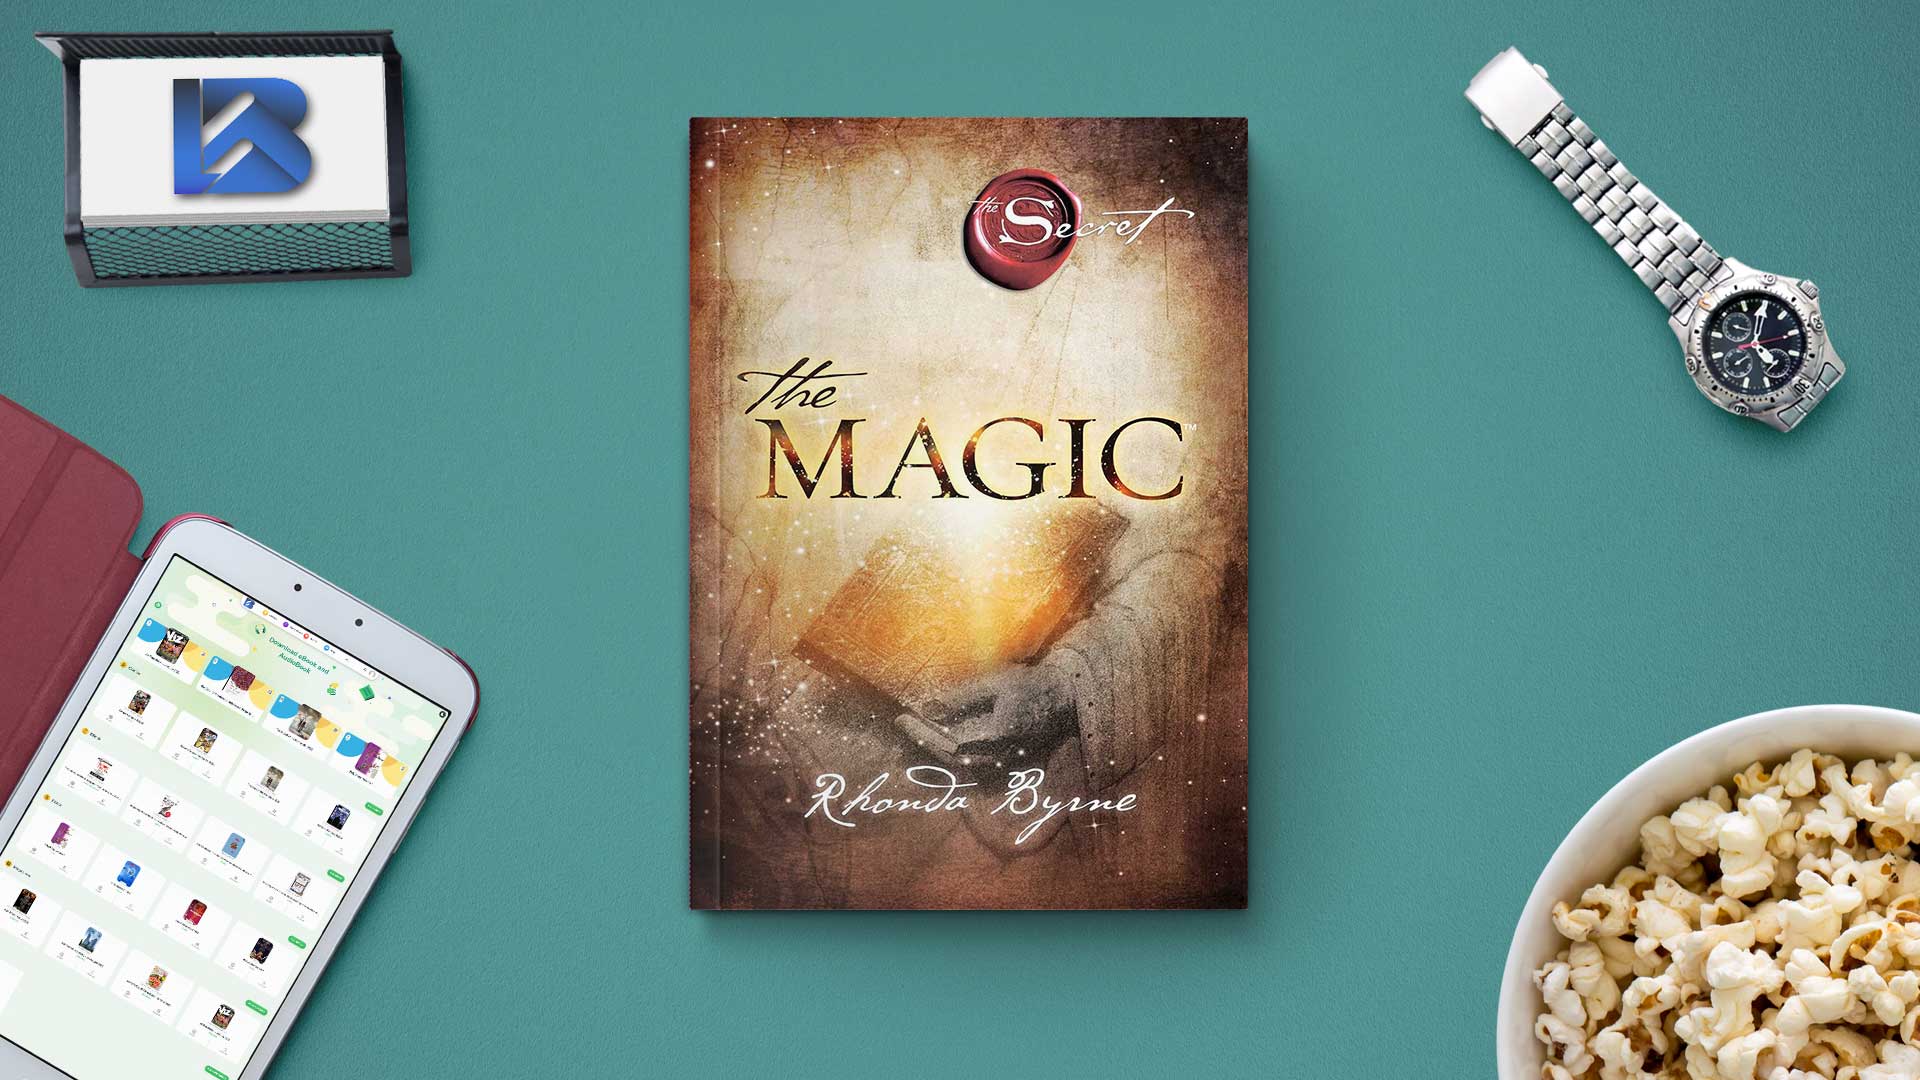 Download The Magic 2012 eBook